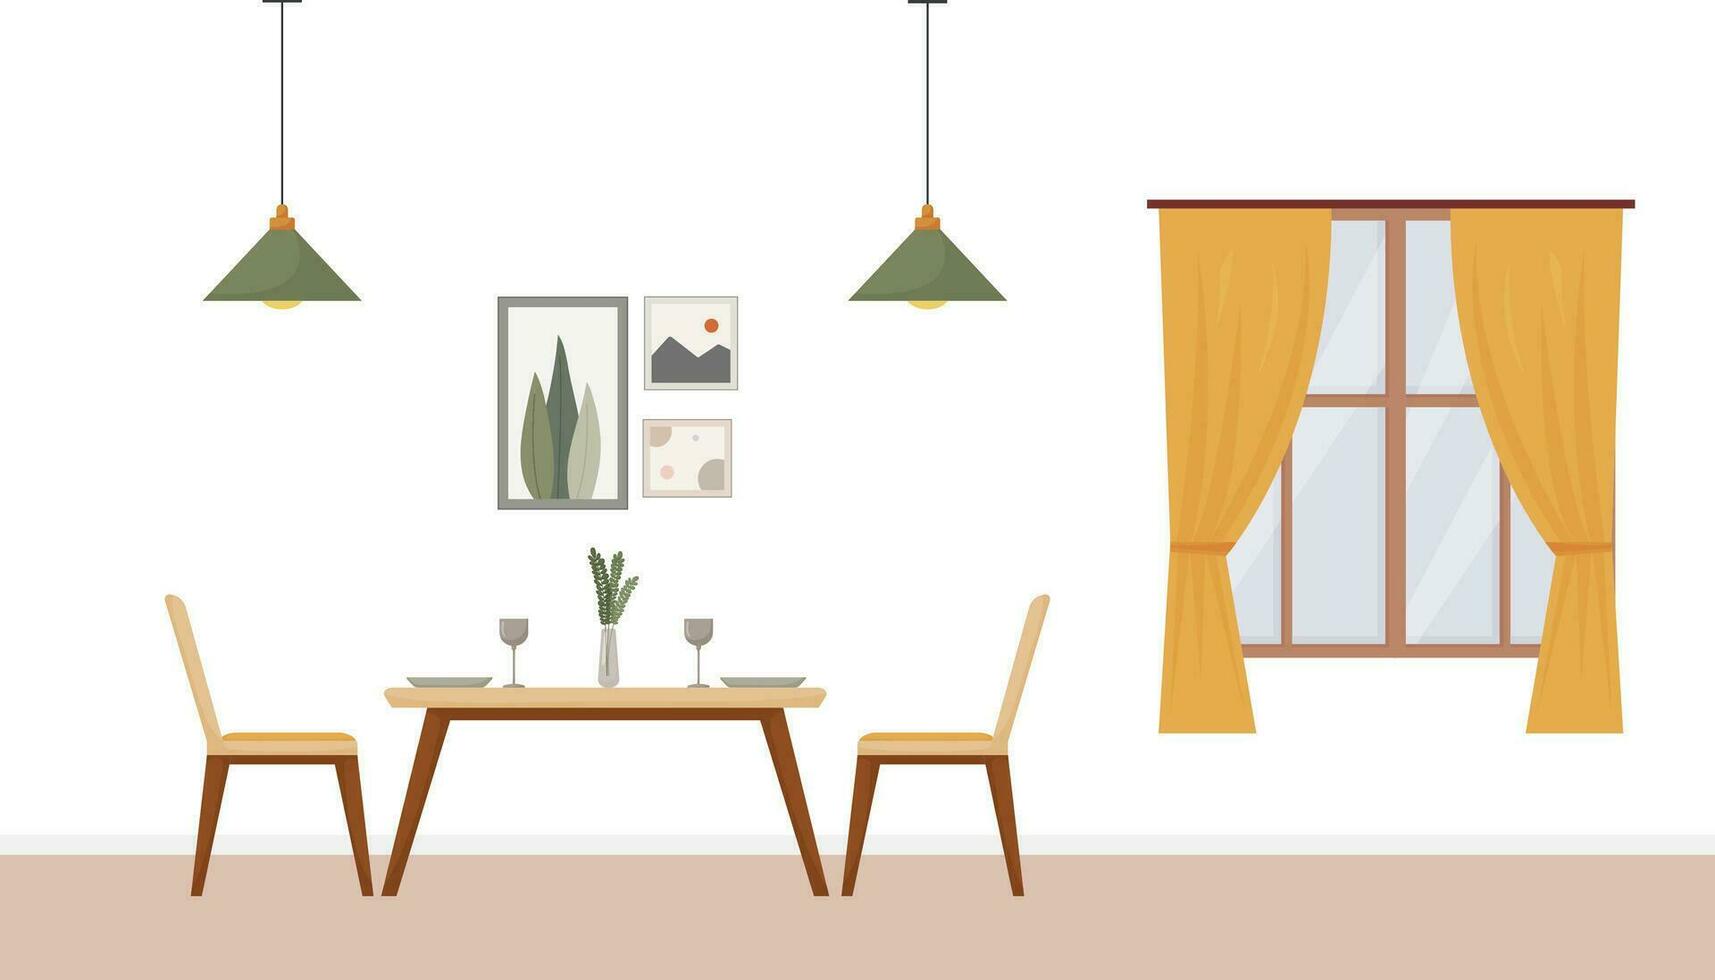 jantar quarto interior, moderno plano projeto, mesa e cadeiras, pratos, vinho copos, vaso, lâmpada, plantar, janela, cortinas, acolhedor vetor ilustração